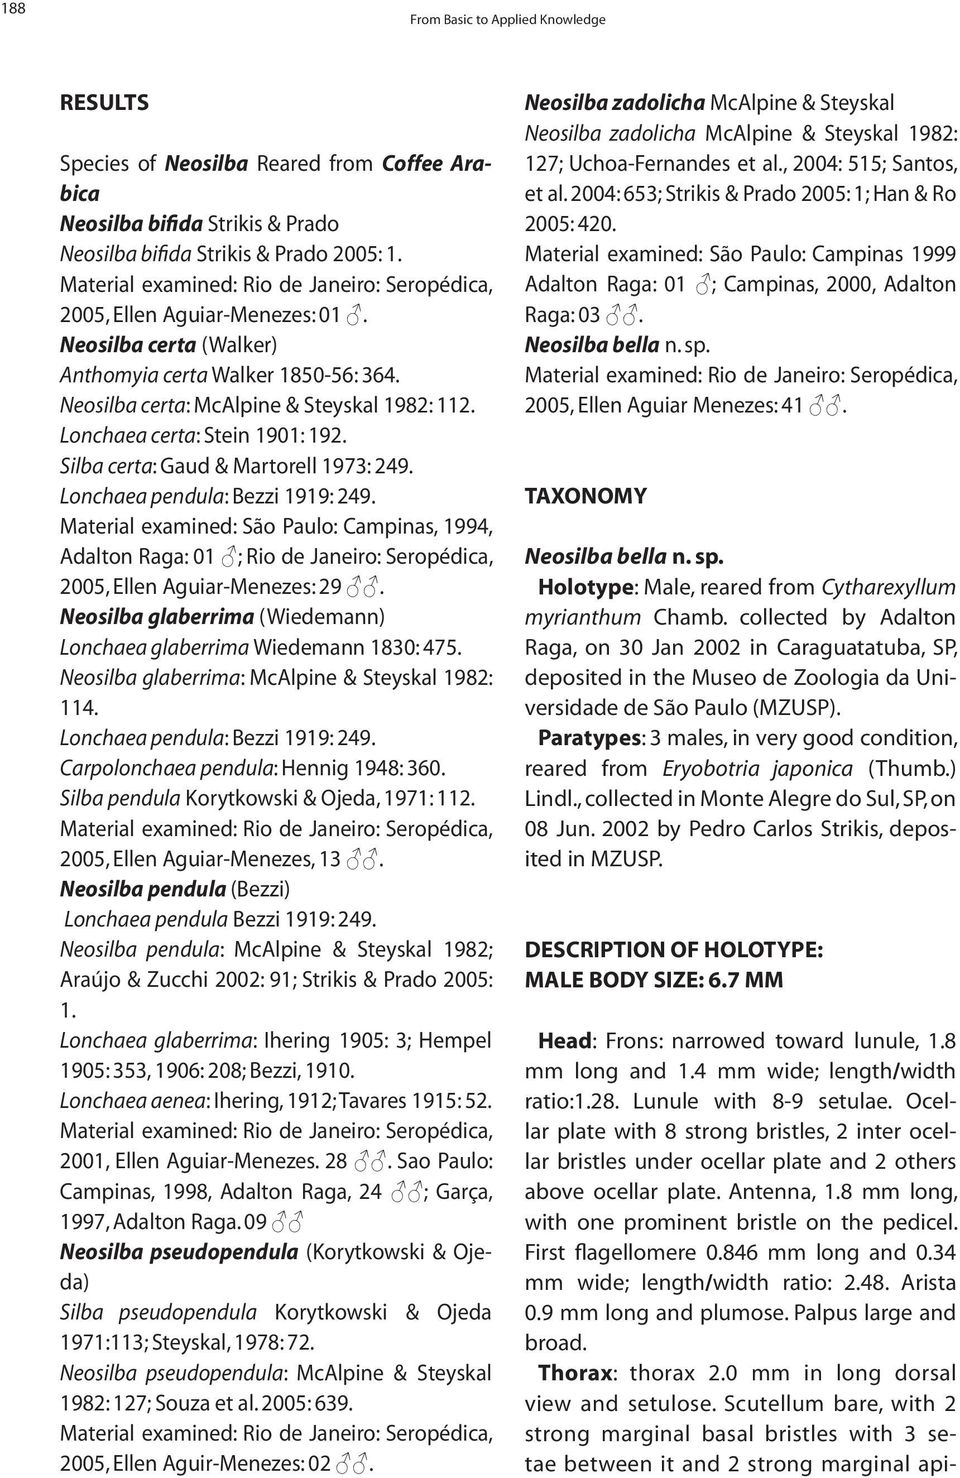 Lonchaea pendula: Bezzi 1919: 249. Material examined: São Paulo: Campinas, 1994, Adalton Raga: 01 ; Rio de Janeiro: Seropédica, 2005, Ellen Aguiar-Menezes: 29.